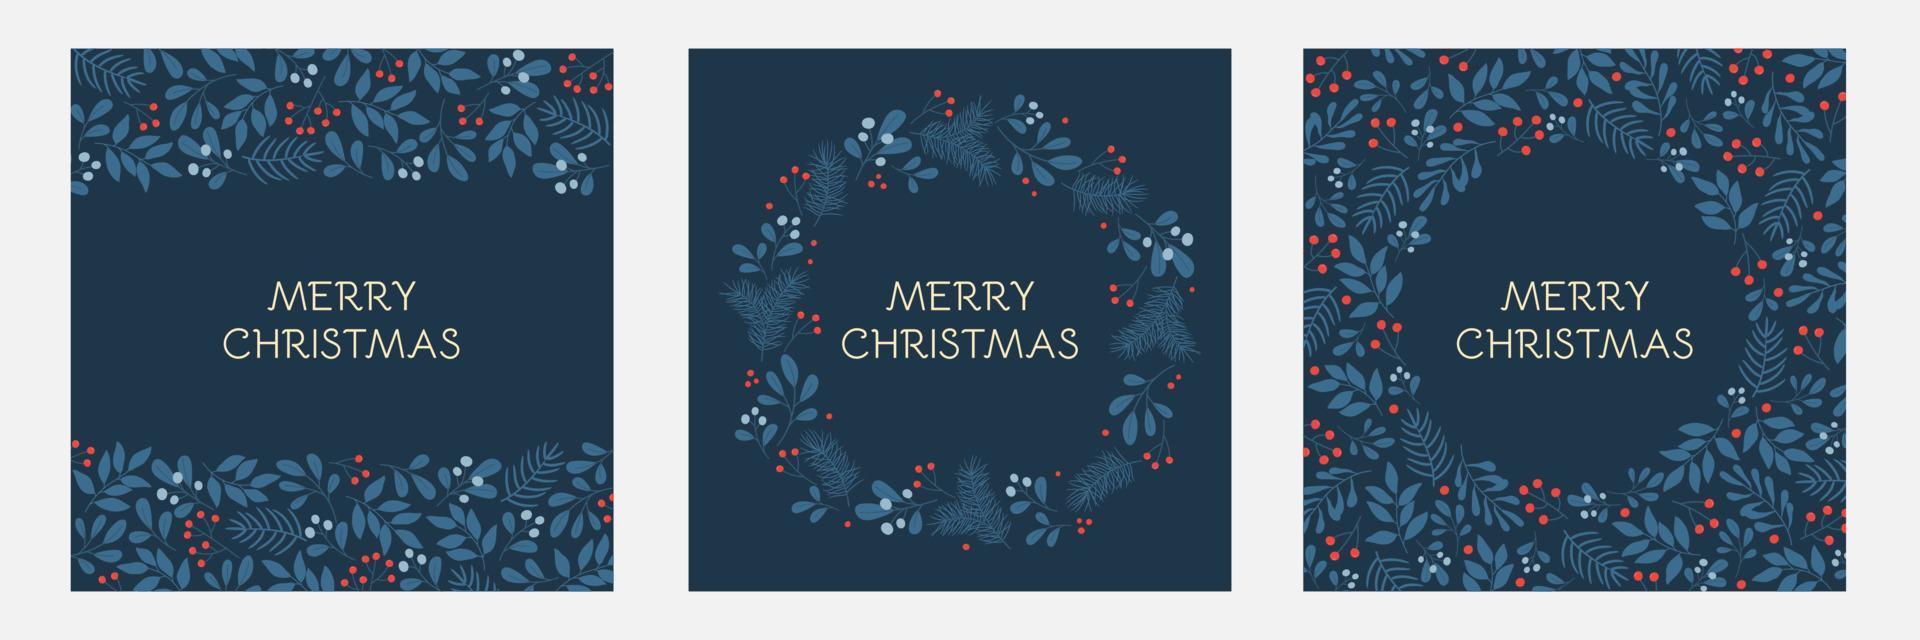 satz feiertagsgrußkarten mit blumenrahmen und weihnachtsverzierung. Winterzweigmuster in blauen Farben. vektor